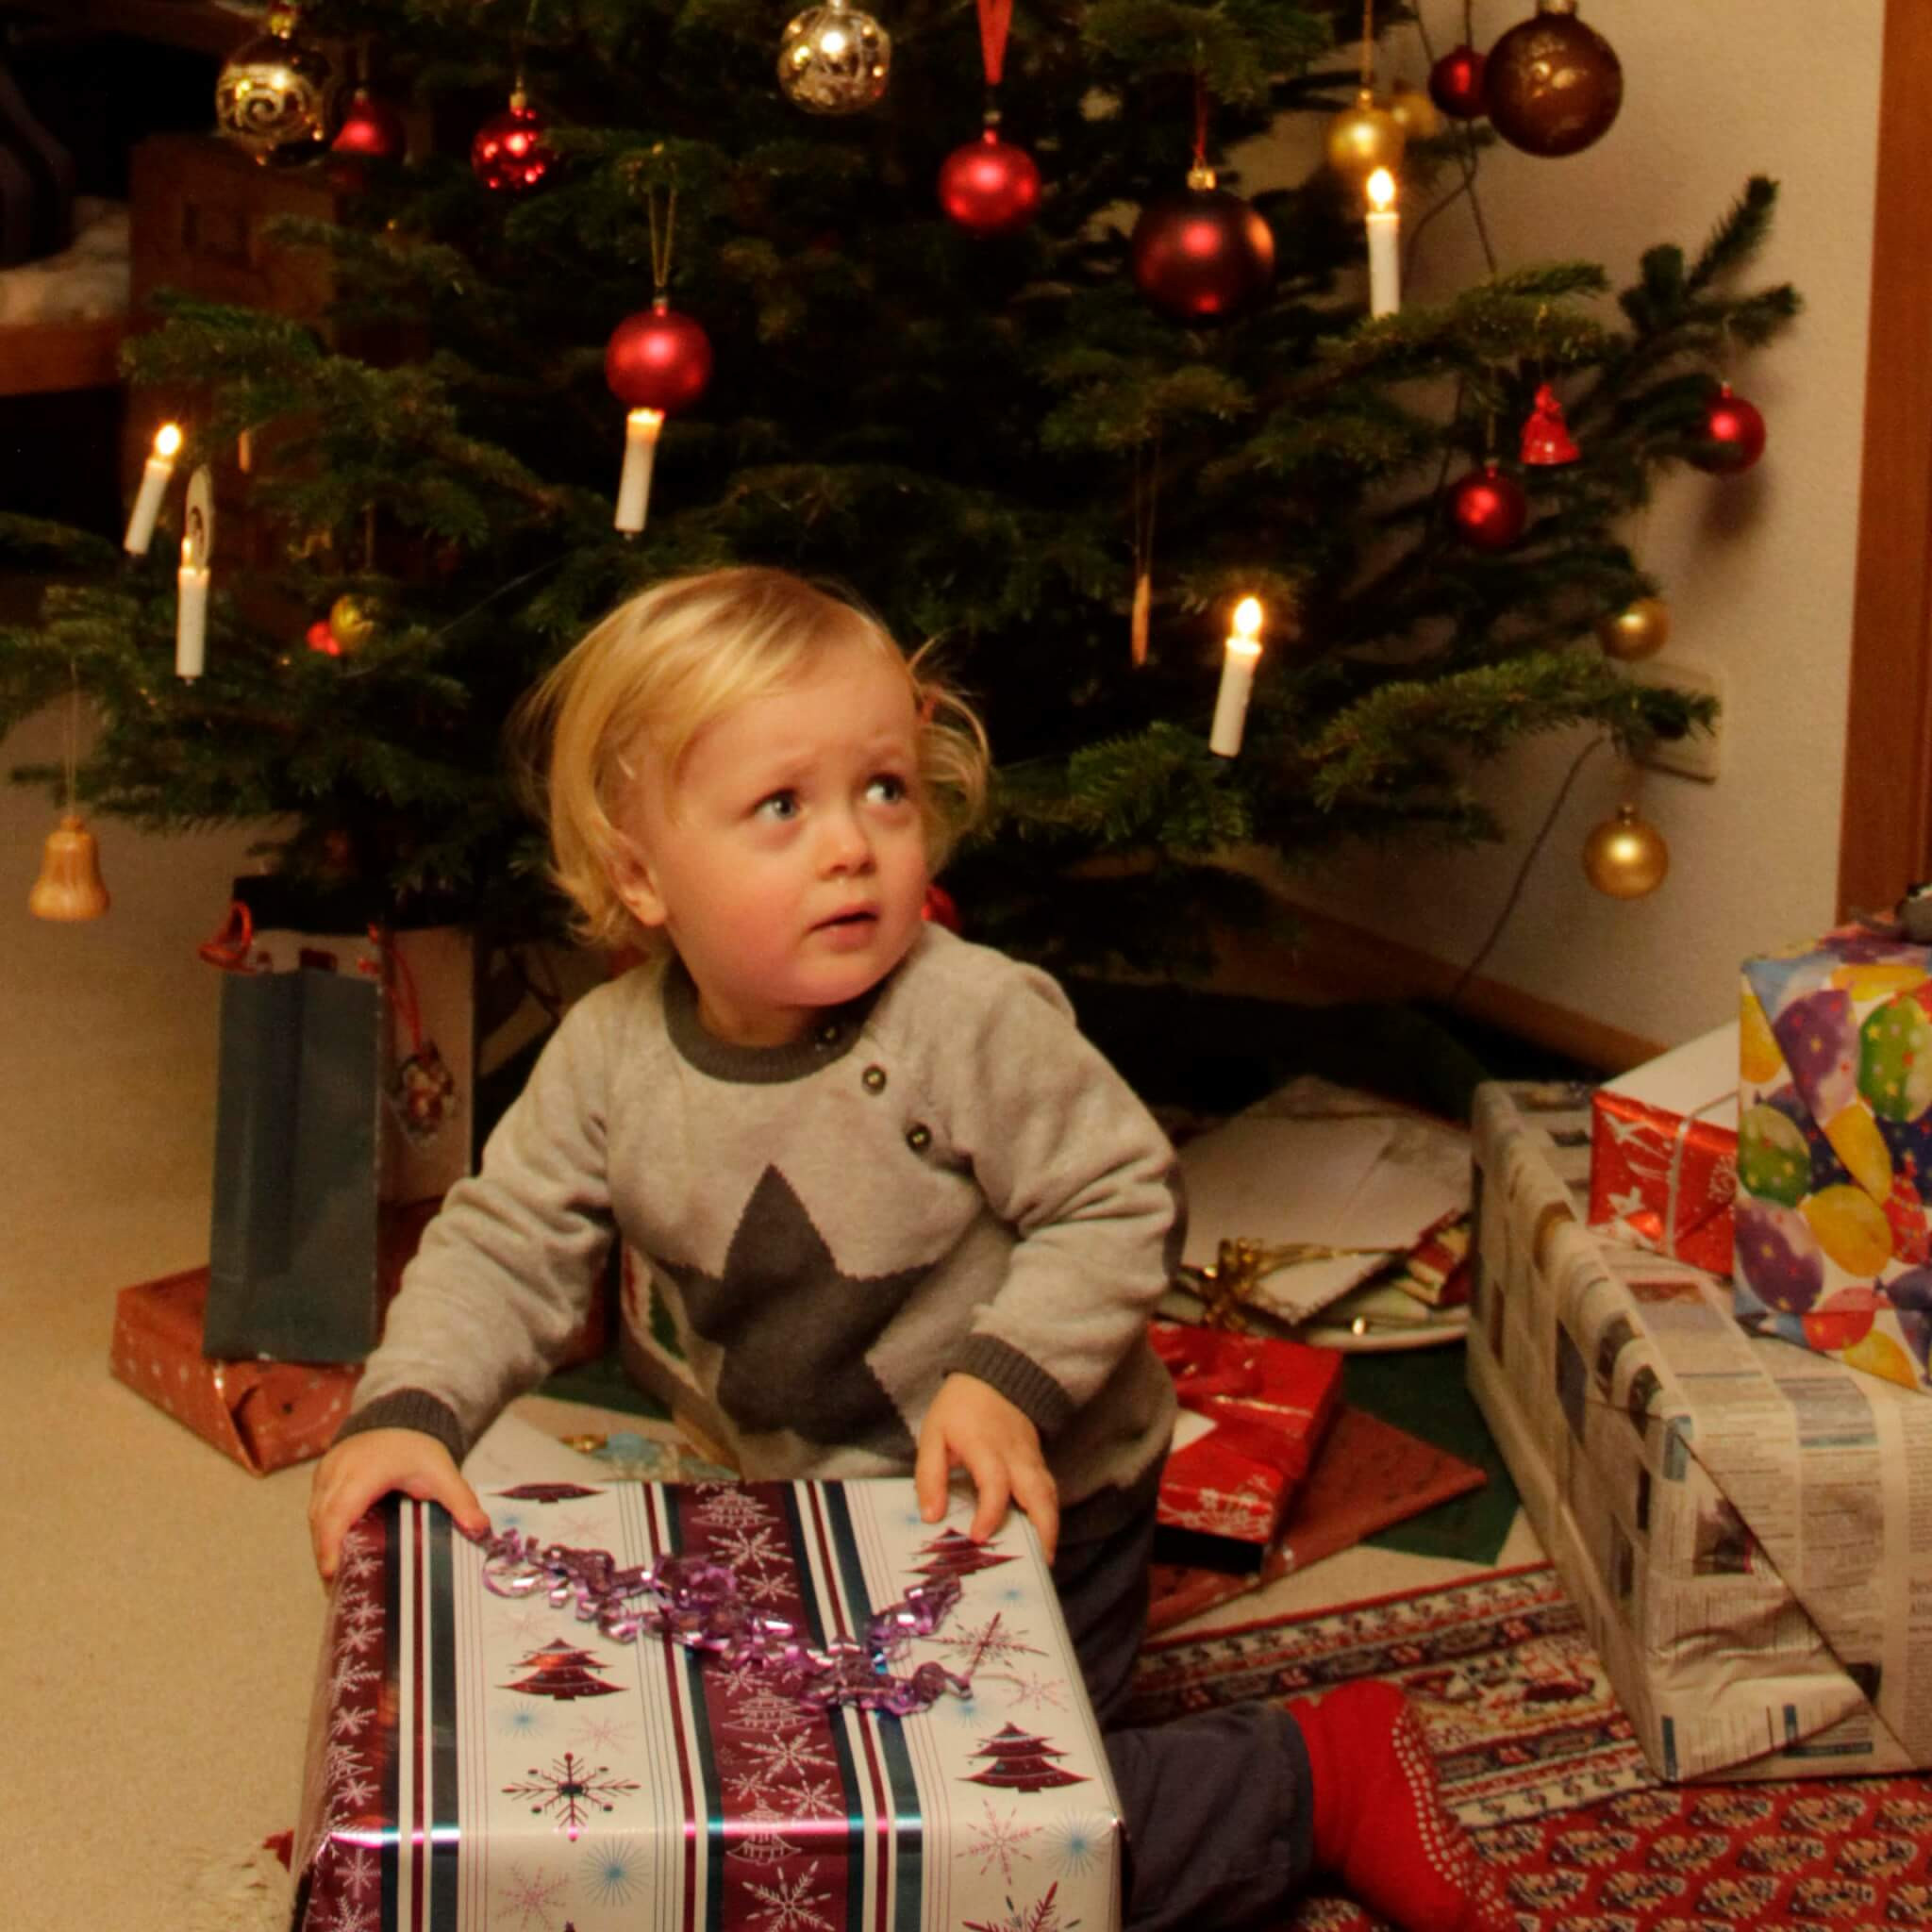 Geschenkideen Weihnachten Kinder
 Geschenkideen zu Weihnachten für Kinder bis sechs Jahre